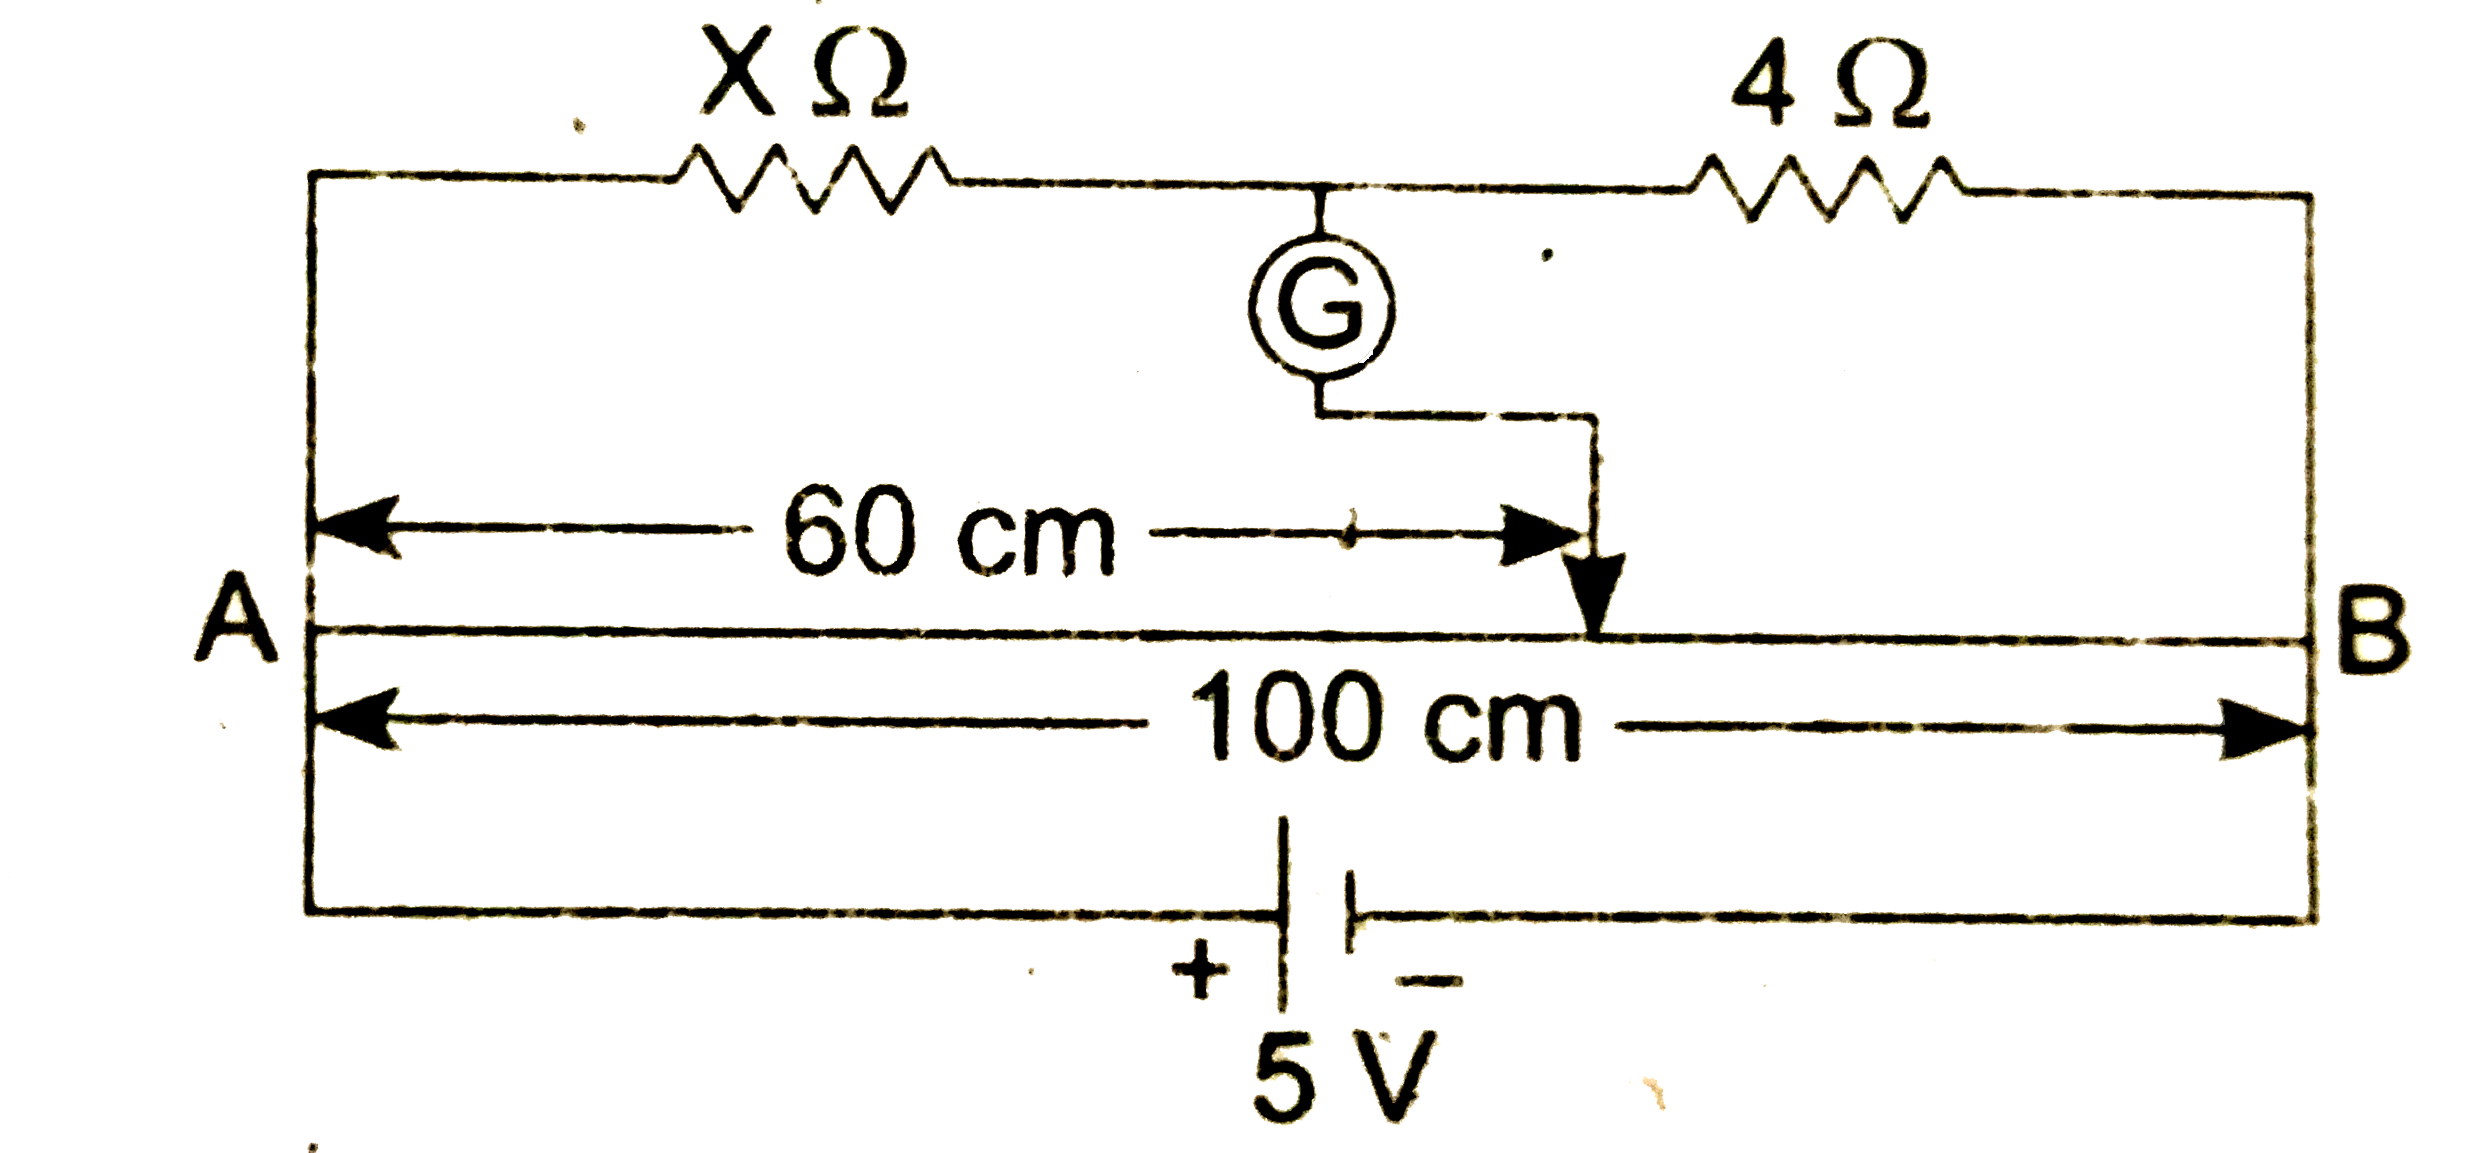 एक 3 वोल्ट विधुत वाहक बल की सेल 4 ओम प्रतिरोध वाले विभवमापी तार AC के मध्य जुडी है । 12 ओम प्रतिरोध के सिरों के बिच विभवान्तर ज्ञात कीजिए यदि सम्पर्क बिंदु B विभवमापी तार के ठीक मध्य में हो ।